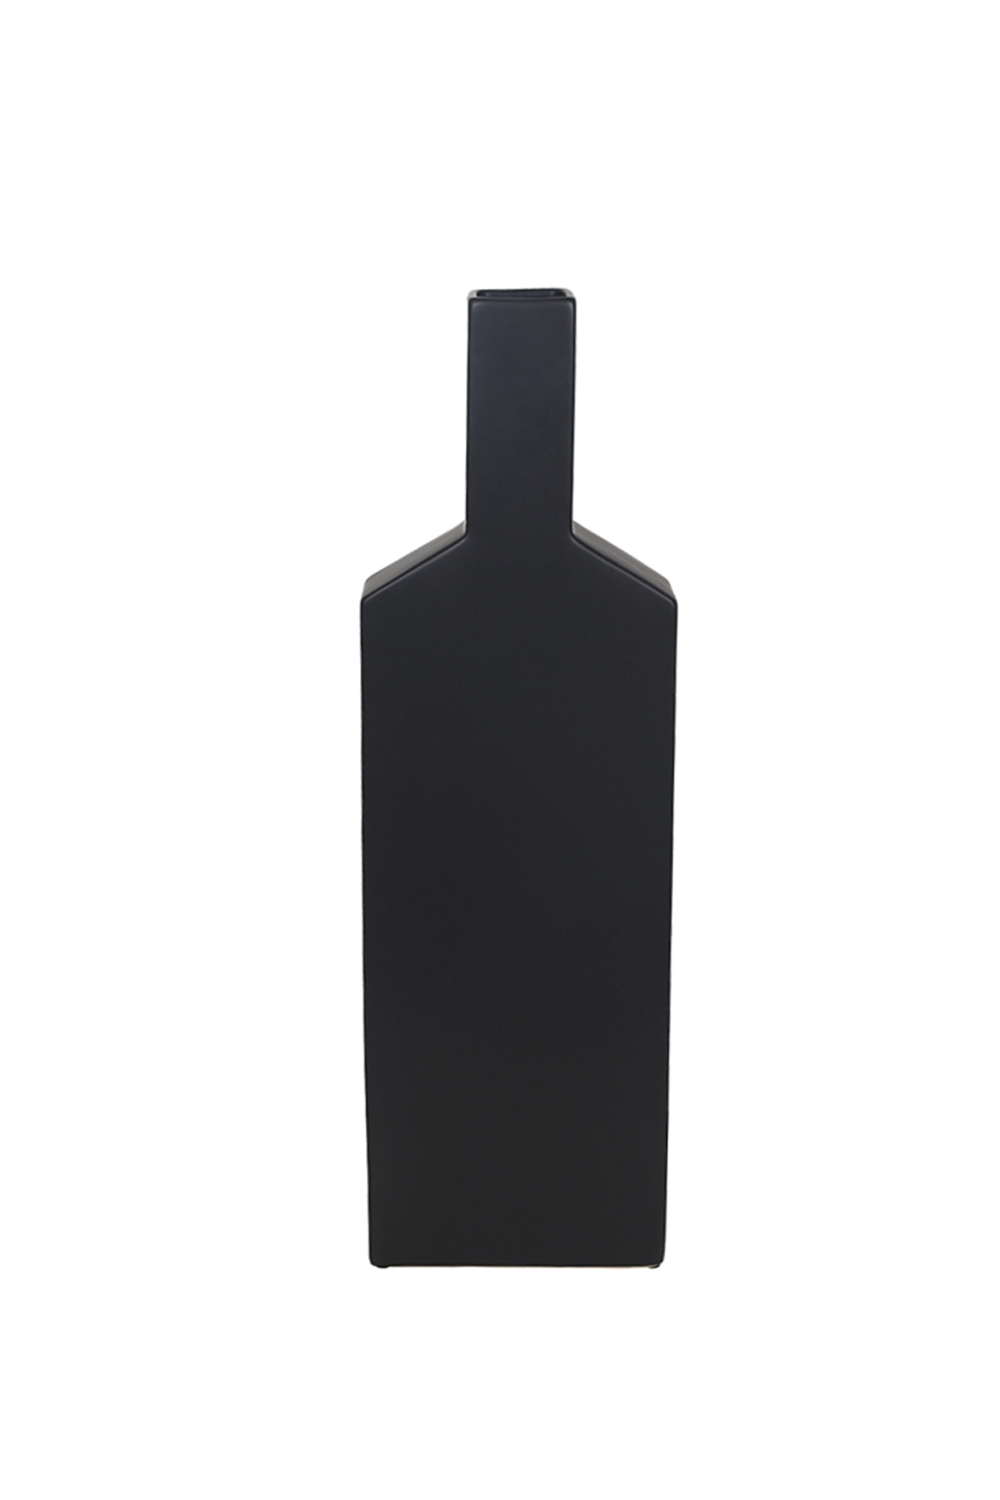 Black Bottle Ceramic Vase | Liang & Eimil Bina Bud I | Oroa.com